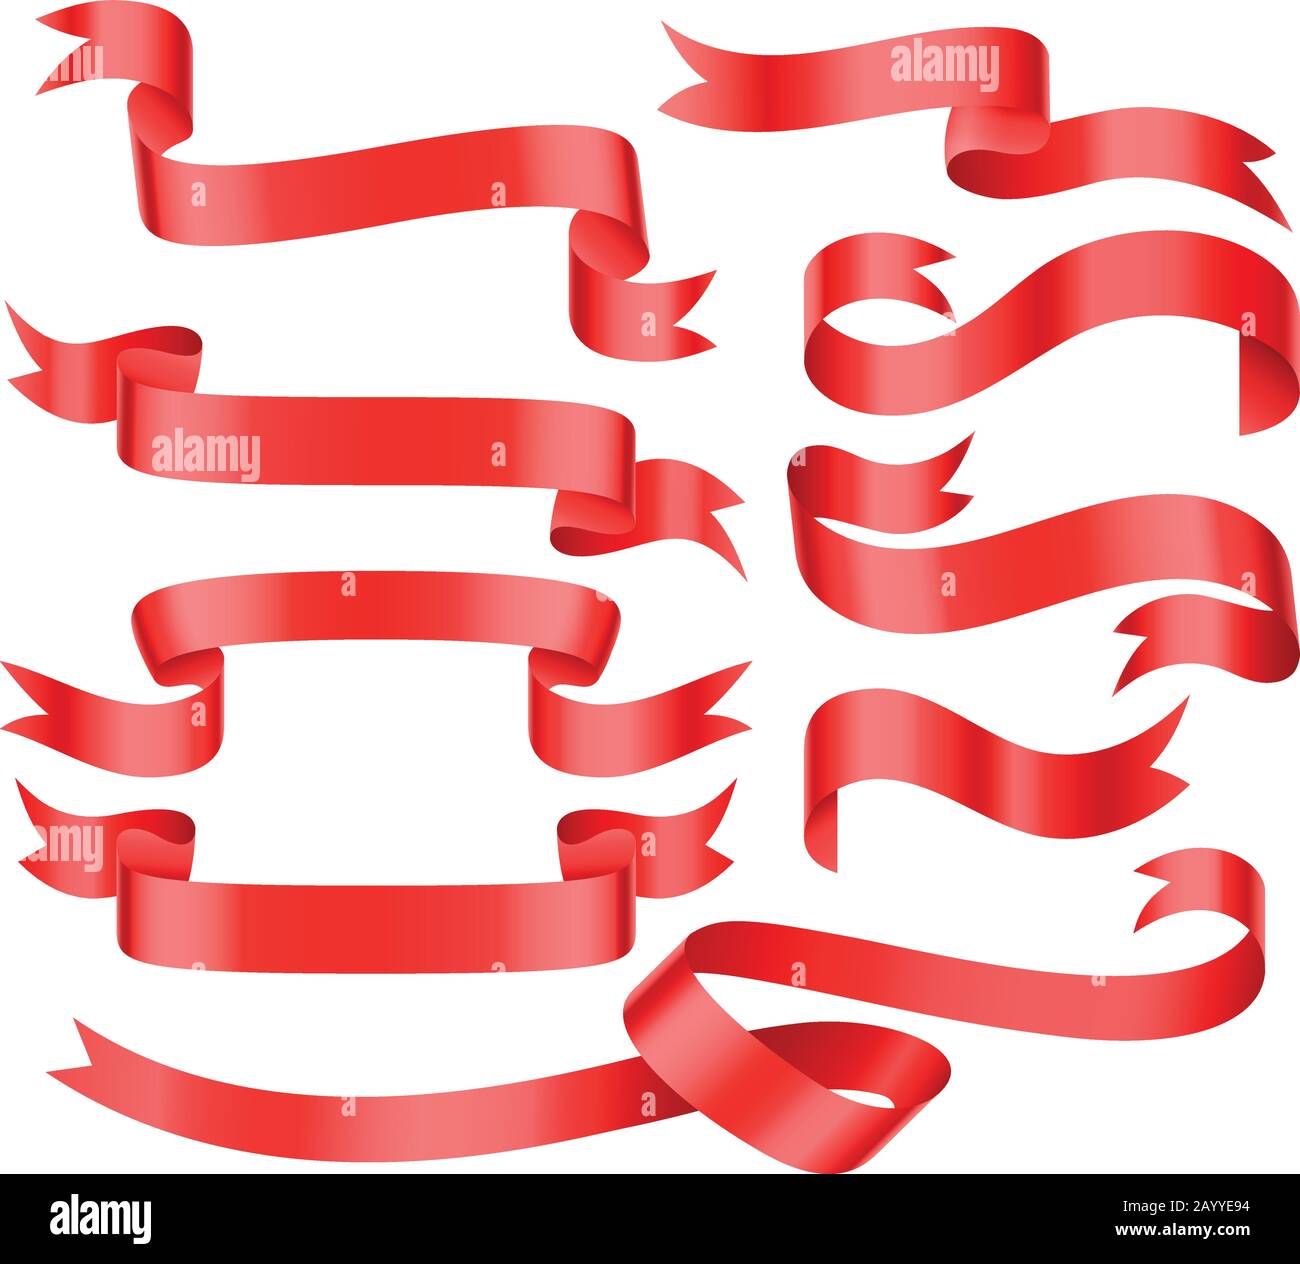 Rote leuchtend glänzende Farbbandmuster Vektor-Banner. Band für festliche und gruppengewellte Satin- oder Seidenbandillustration Stock Vektor